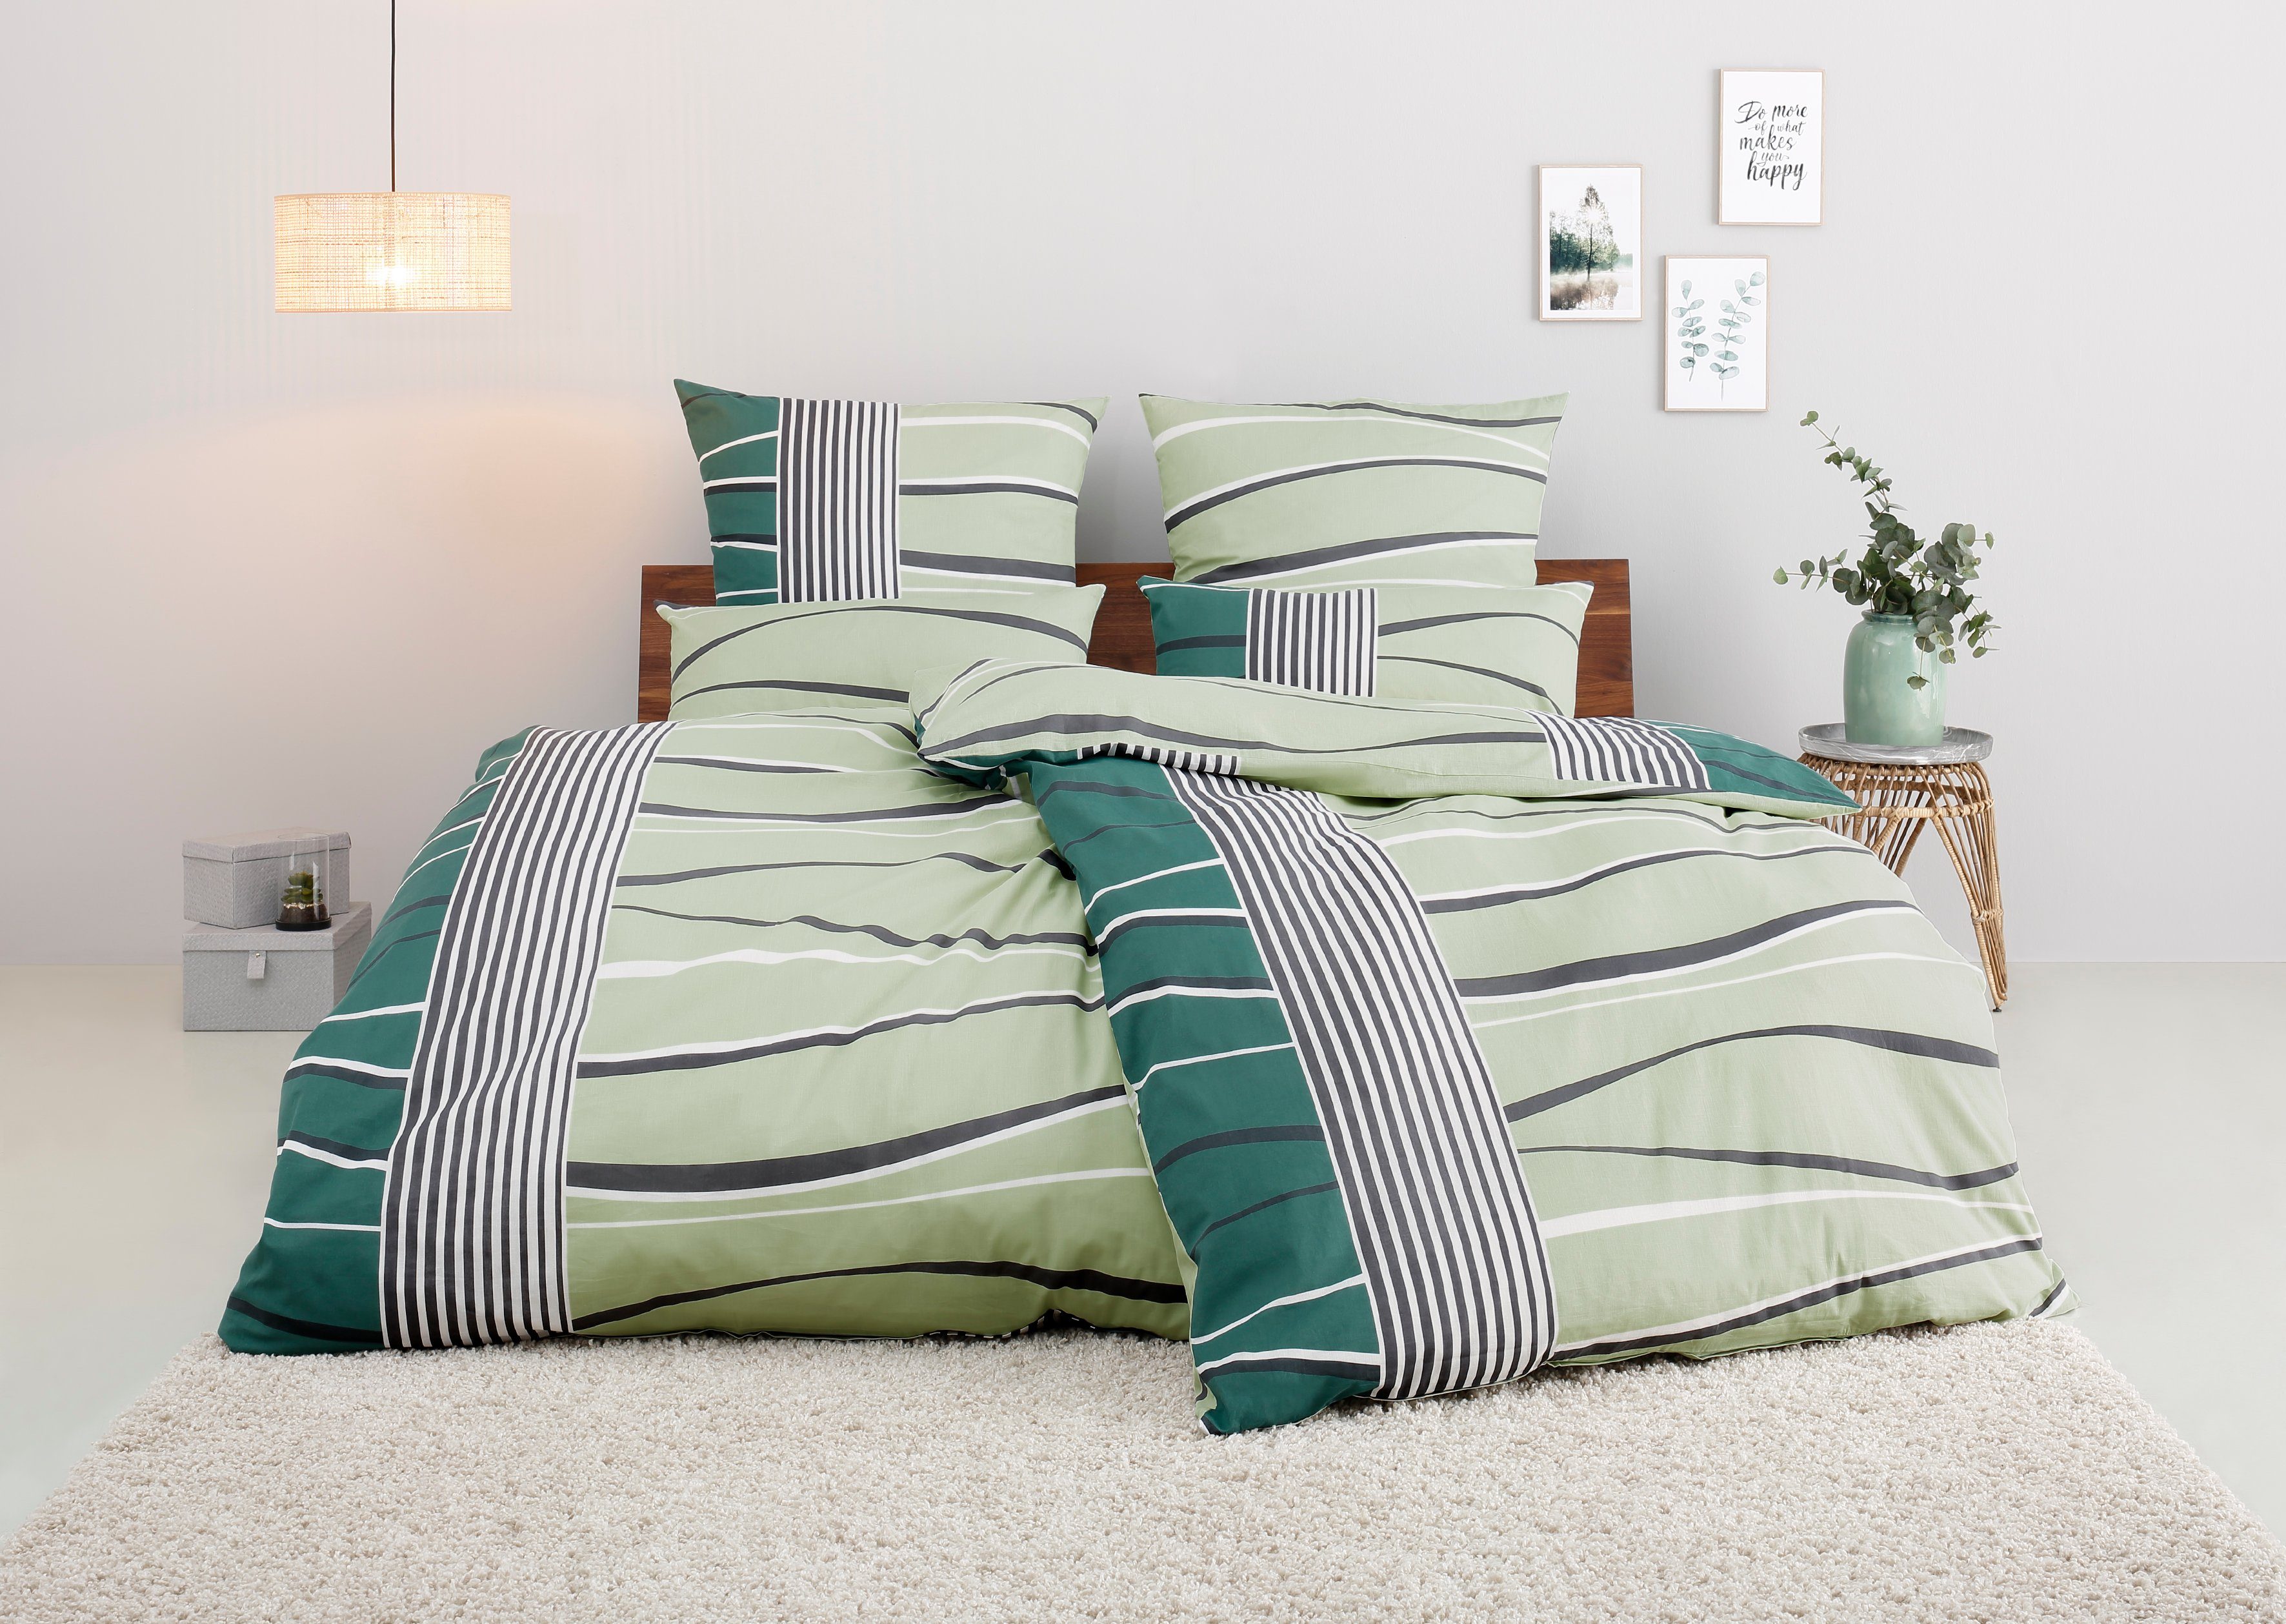 Bettwäsche Renu in Gr. 135x200 oder 155x220 cm, my home, Linon, 2 teilig, Bettwäsche aus Baumwolle, grafische Bettwäsche mit Wellen-Design grün